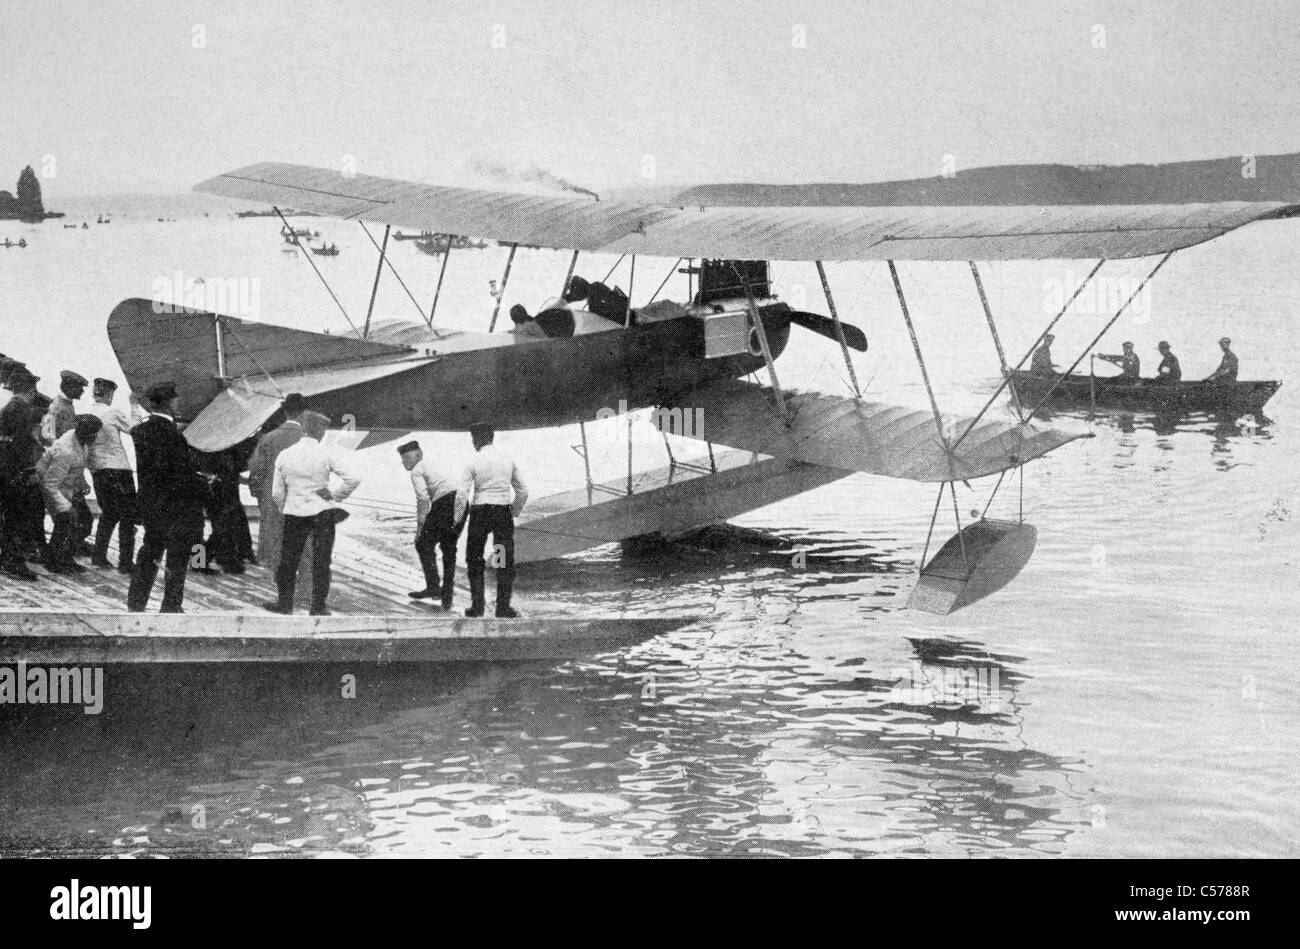 Deutsche Wasserflugzeug verwendet in der Nordsee, um englische Marine Bewegung während des ersten Weltkriegs zu verfolgen. Stockfoto